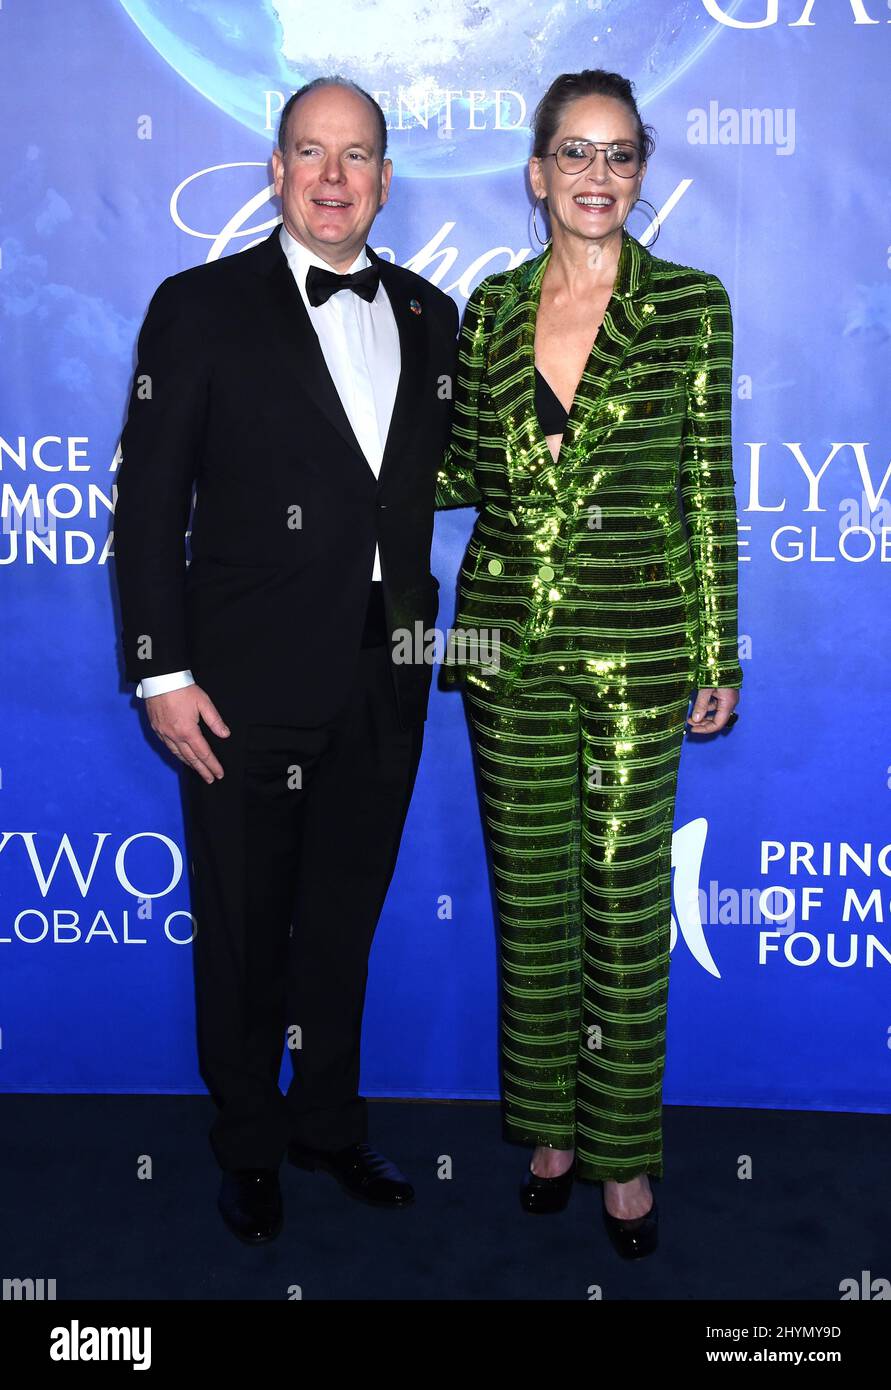 L'HSH Prince Albert II di Monaco e Sharon Stone all'Hollywood 2020 per il Global Ocean Gala in onore dell'HSH Prince Albert II di Monaco tenuto in una tenuta privata il 6 febbraio 2020 a Beverly Hills, Los Angeles. Foto Stock